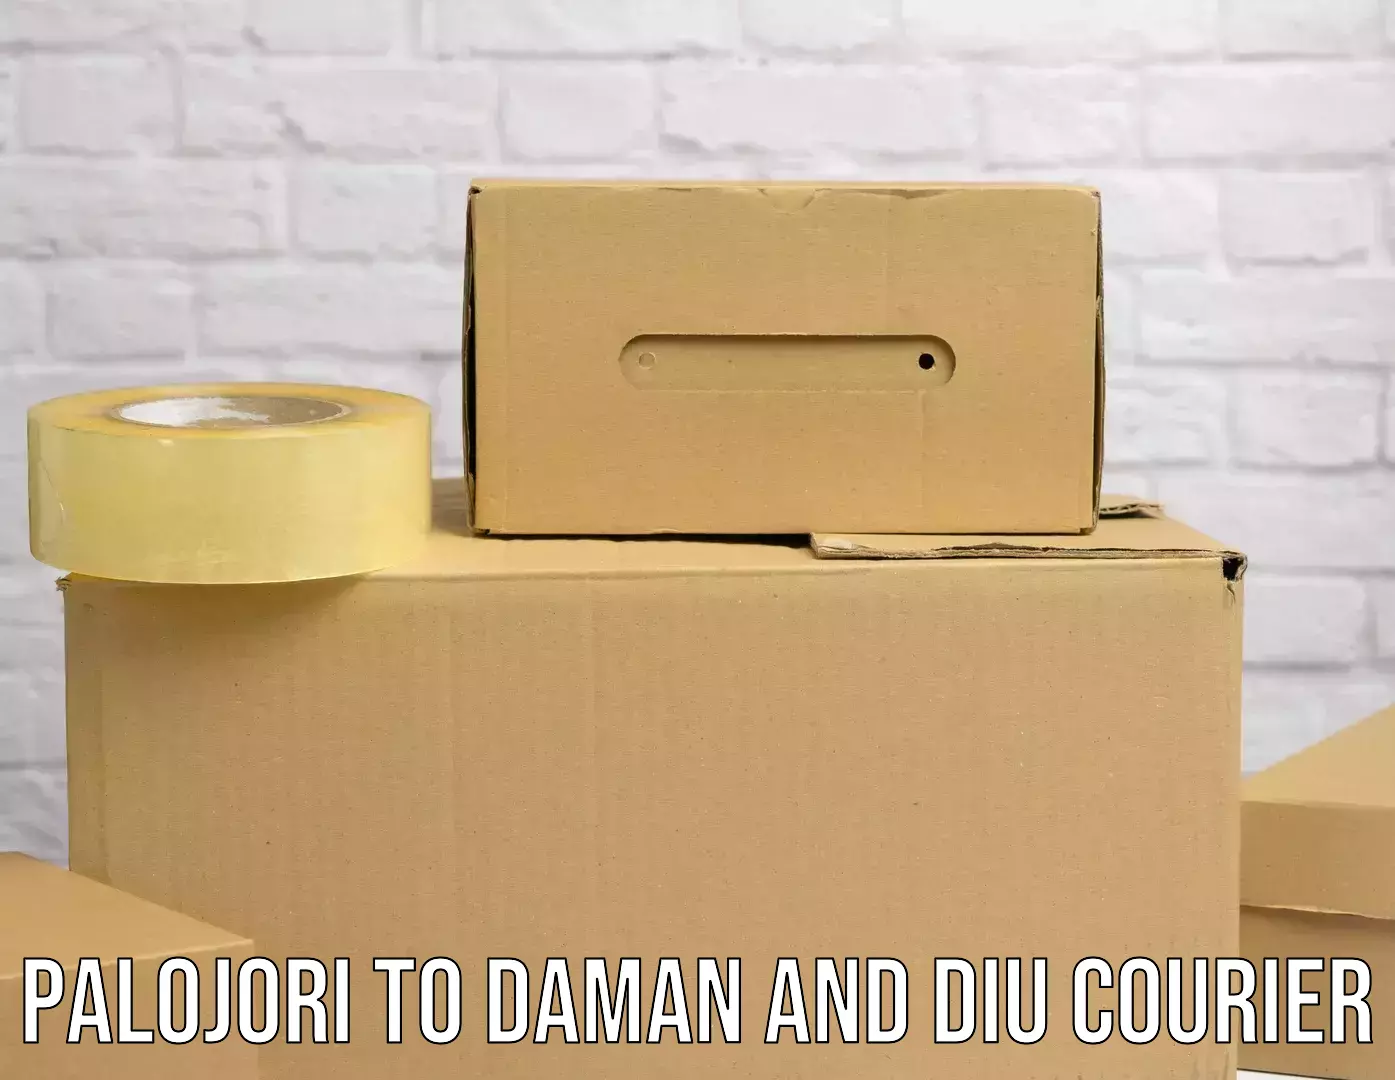 On-demand courier Palojori to Daman and Diu